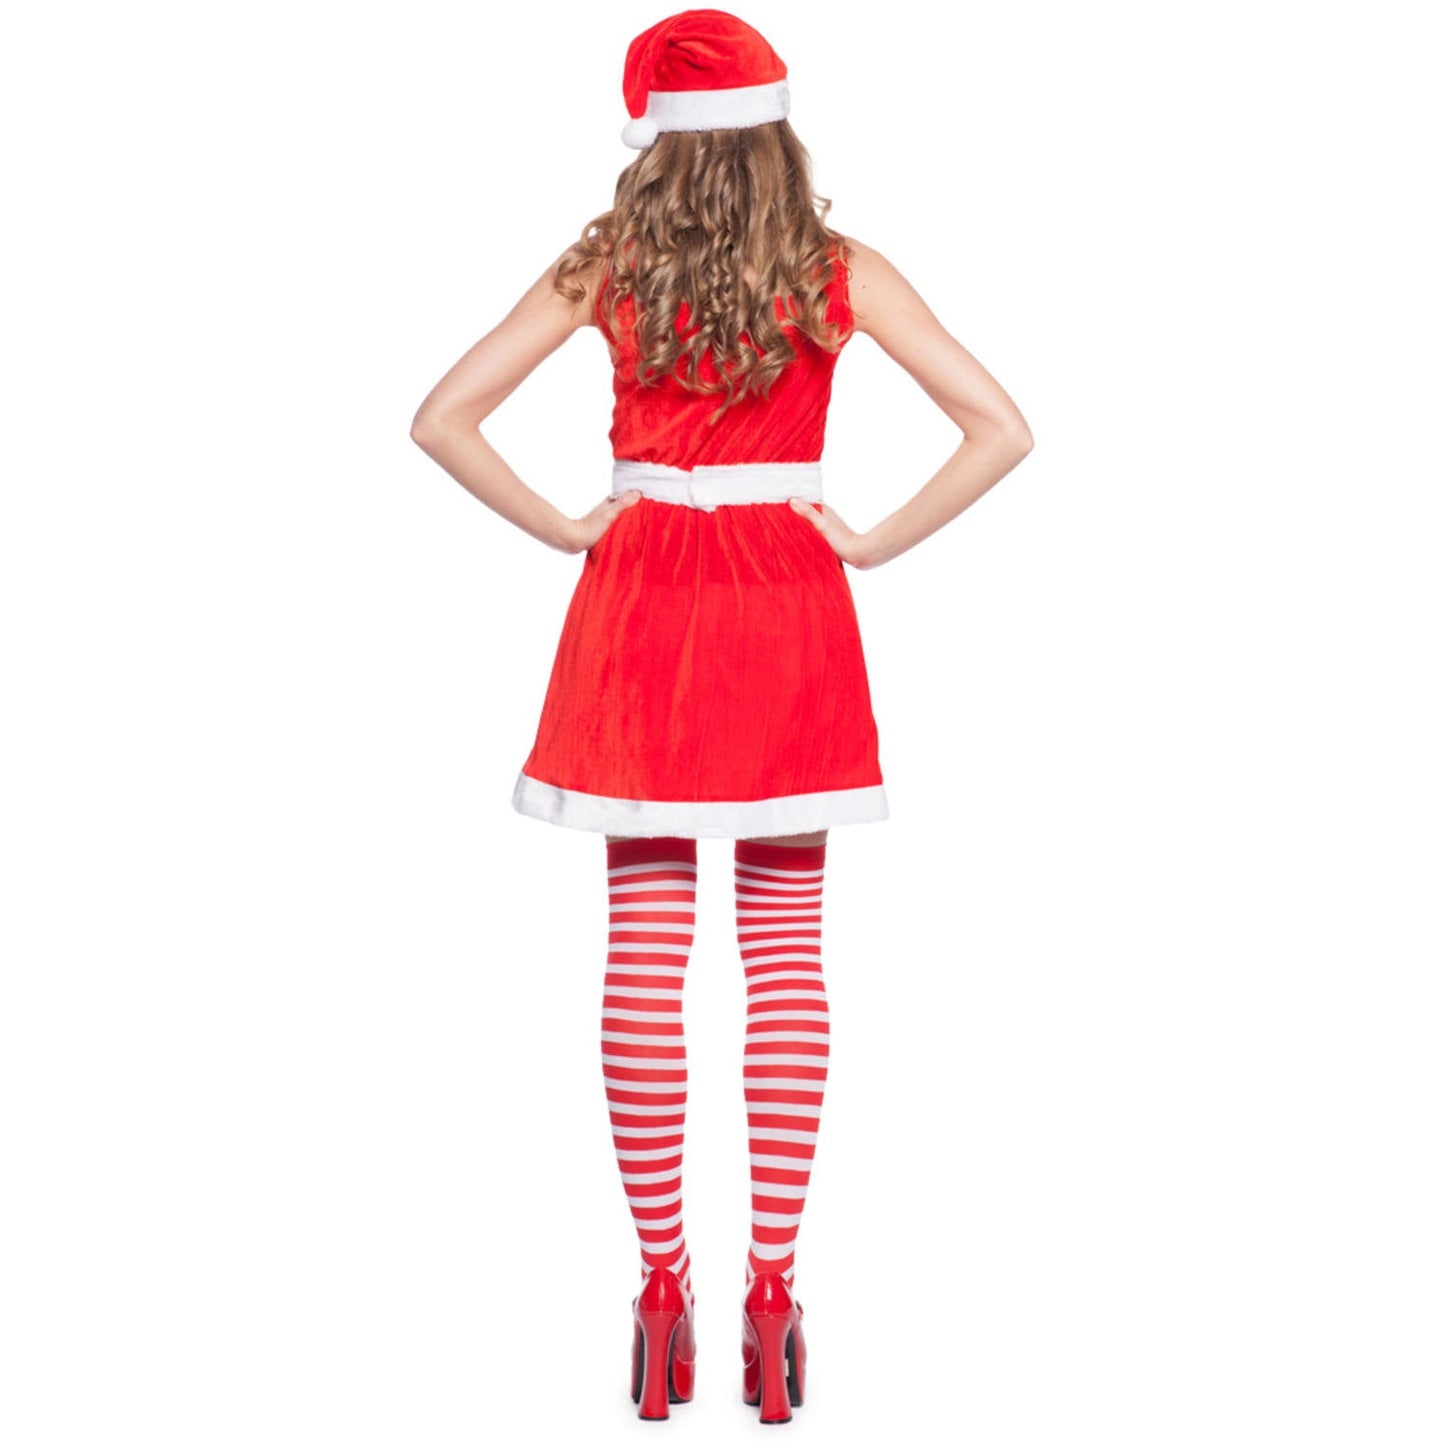 Deluxe Santa Dress - Vier Kerst in Stijl met deze Feestelijke Jurkjes